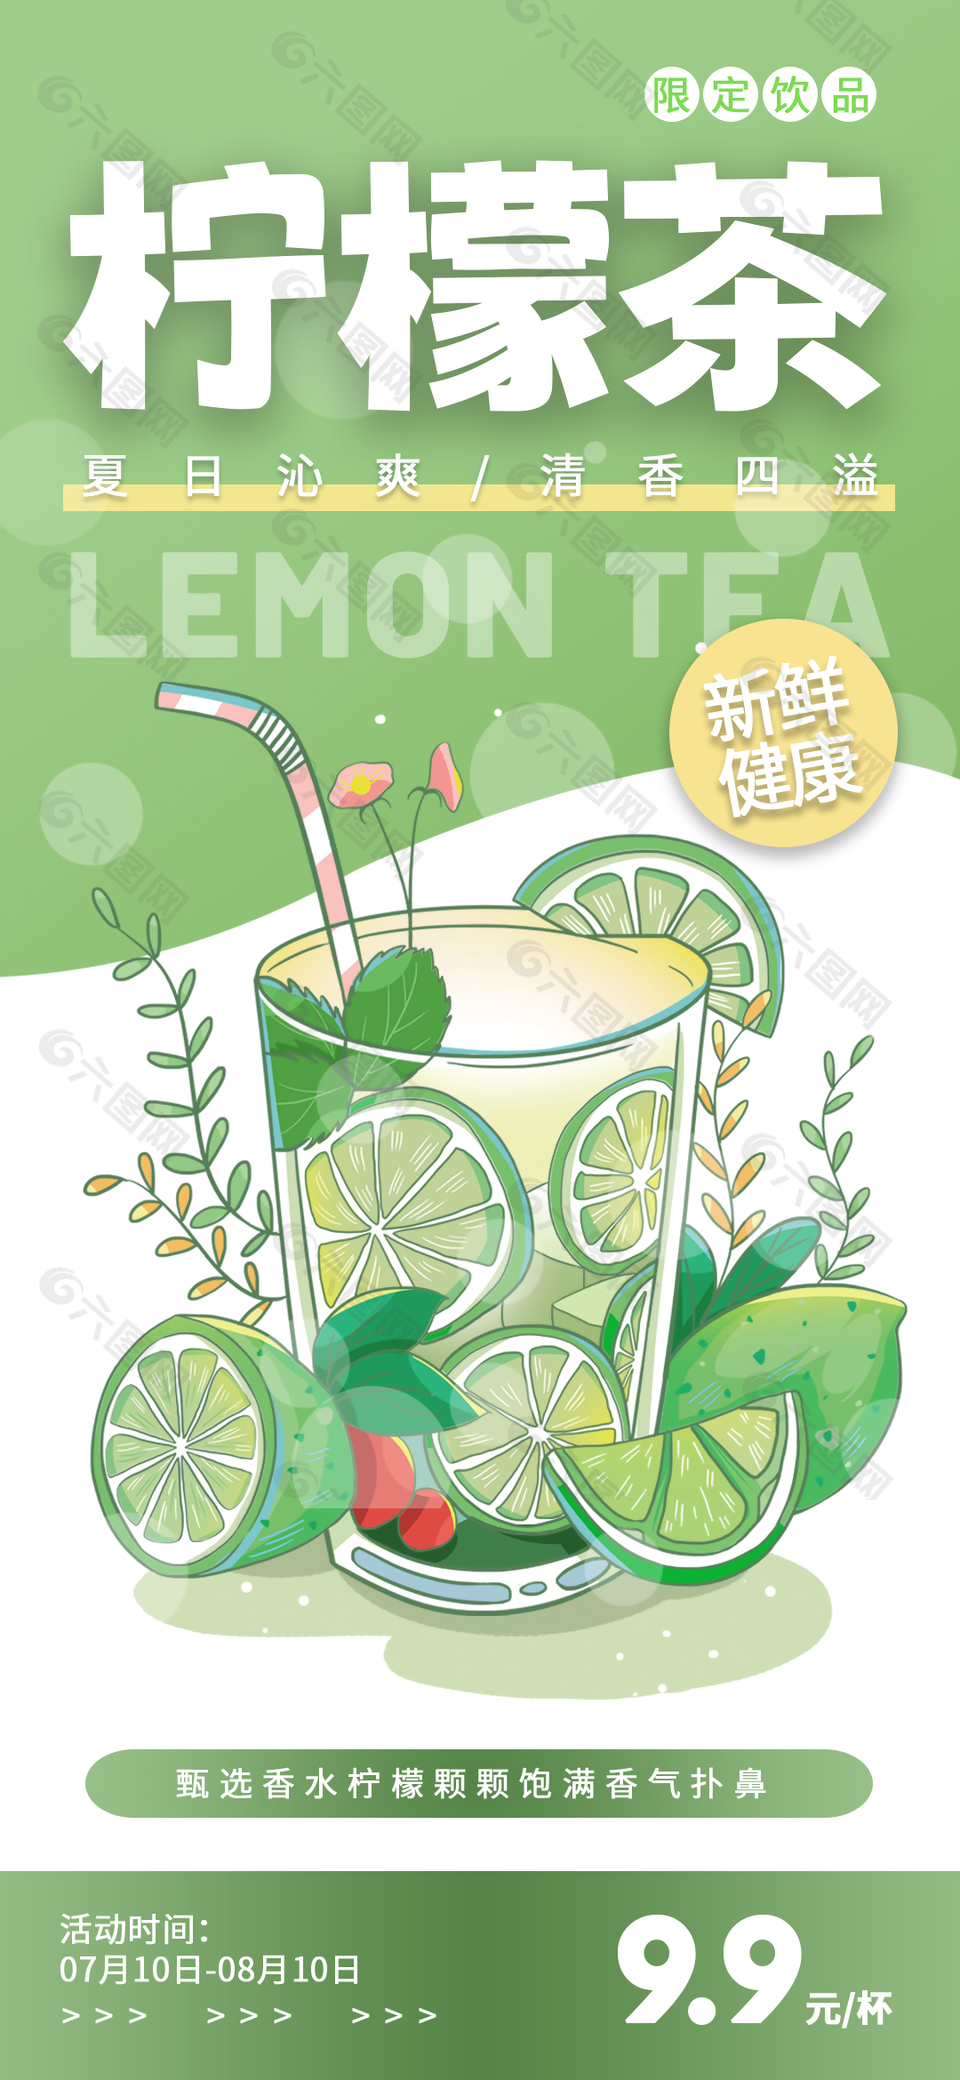 夏日清凉限定柠檬茶创意宣传海报